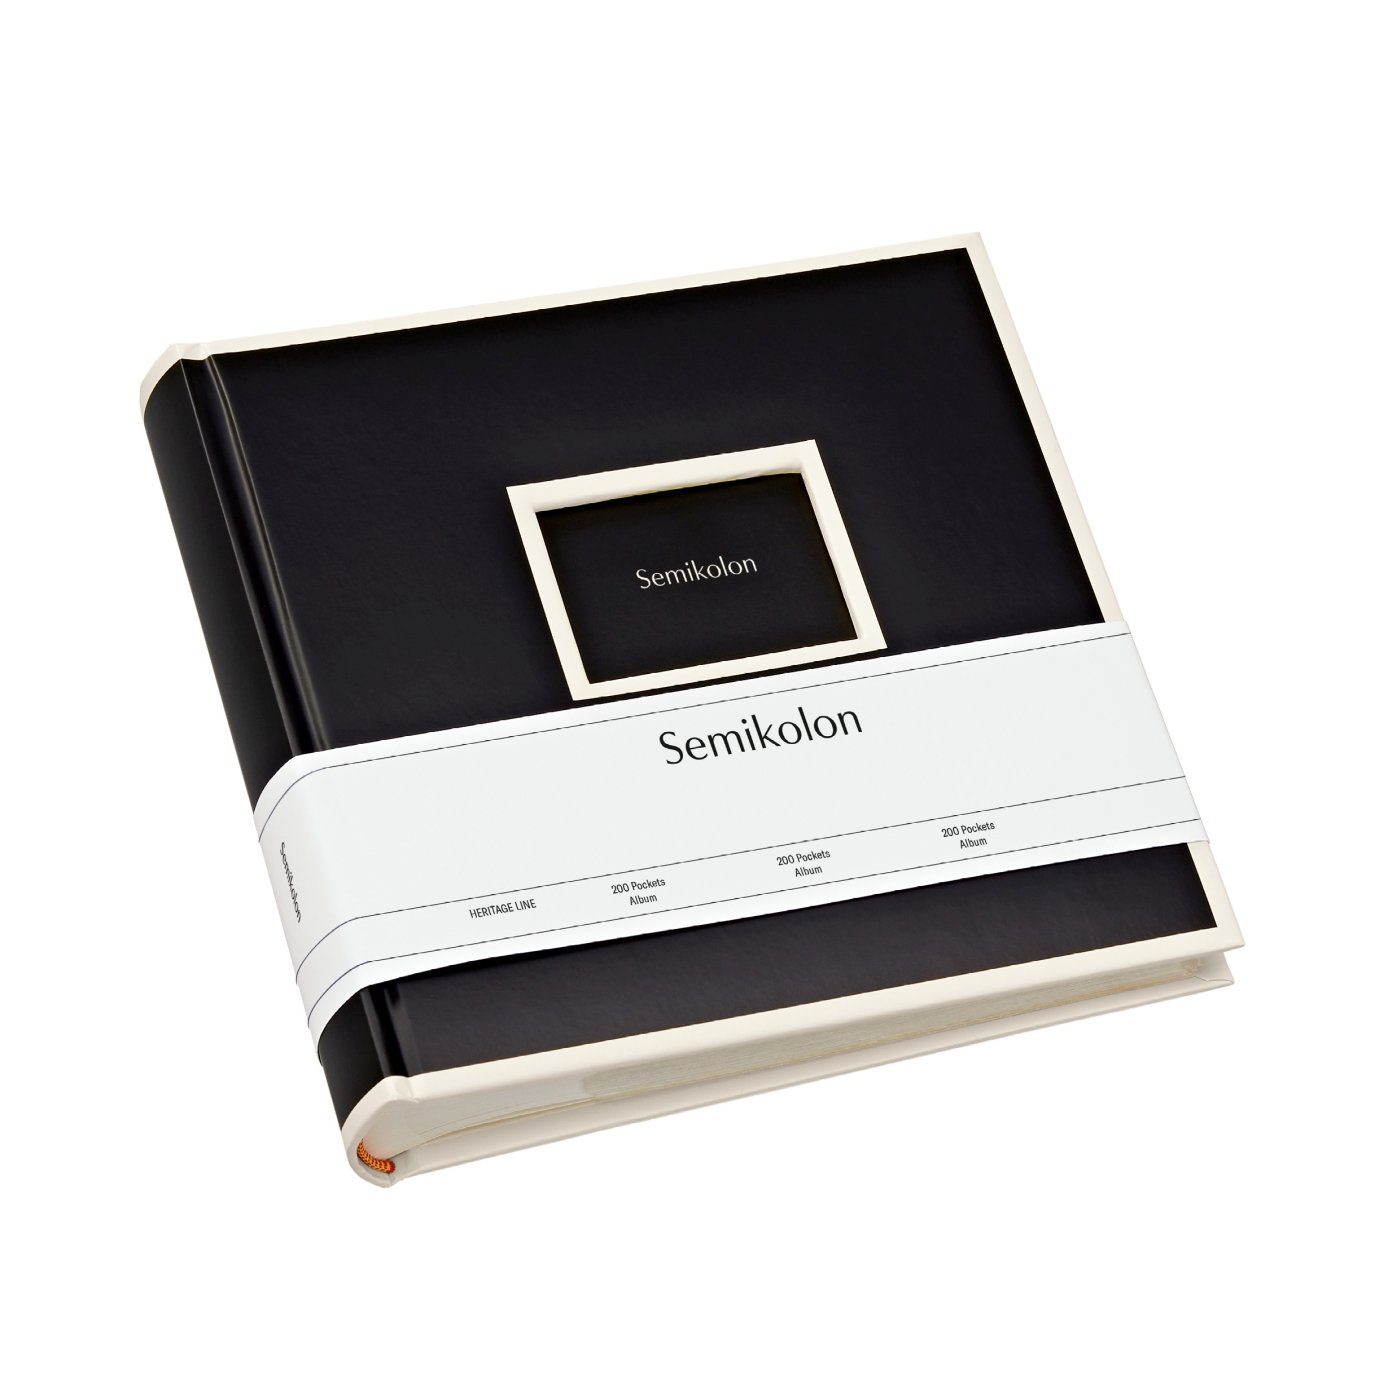 Semikolon Fotoalbum Für 200 Fotos mit dem Format 10 x 15, 100 Seiten mit je 2 Einschubtaschen black